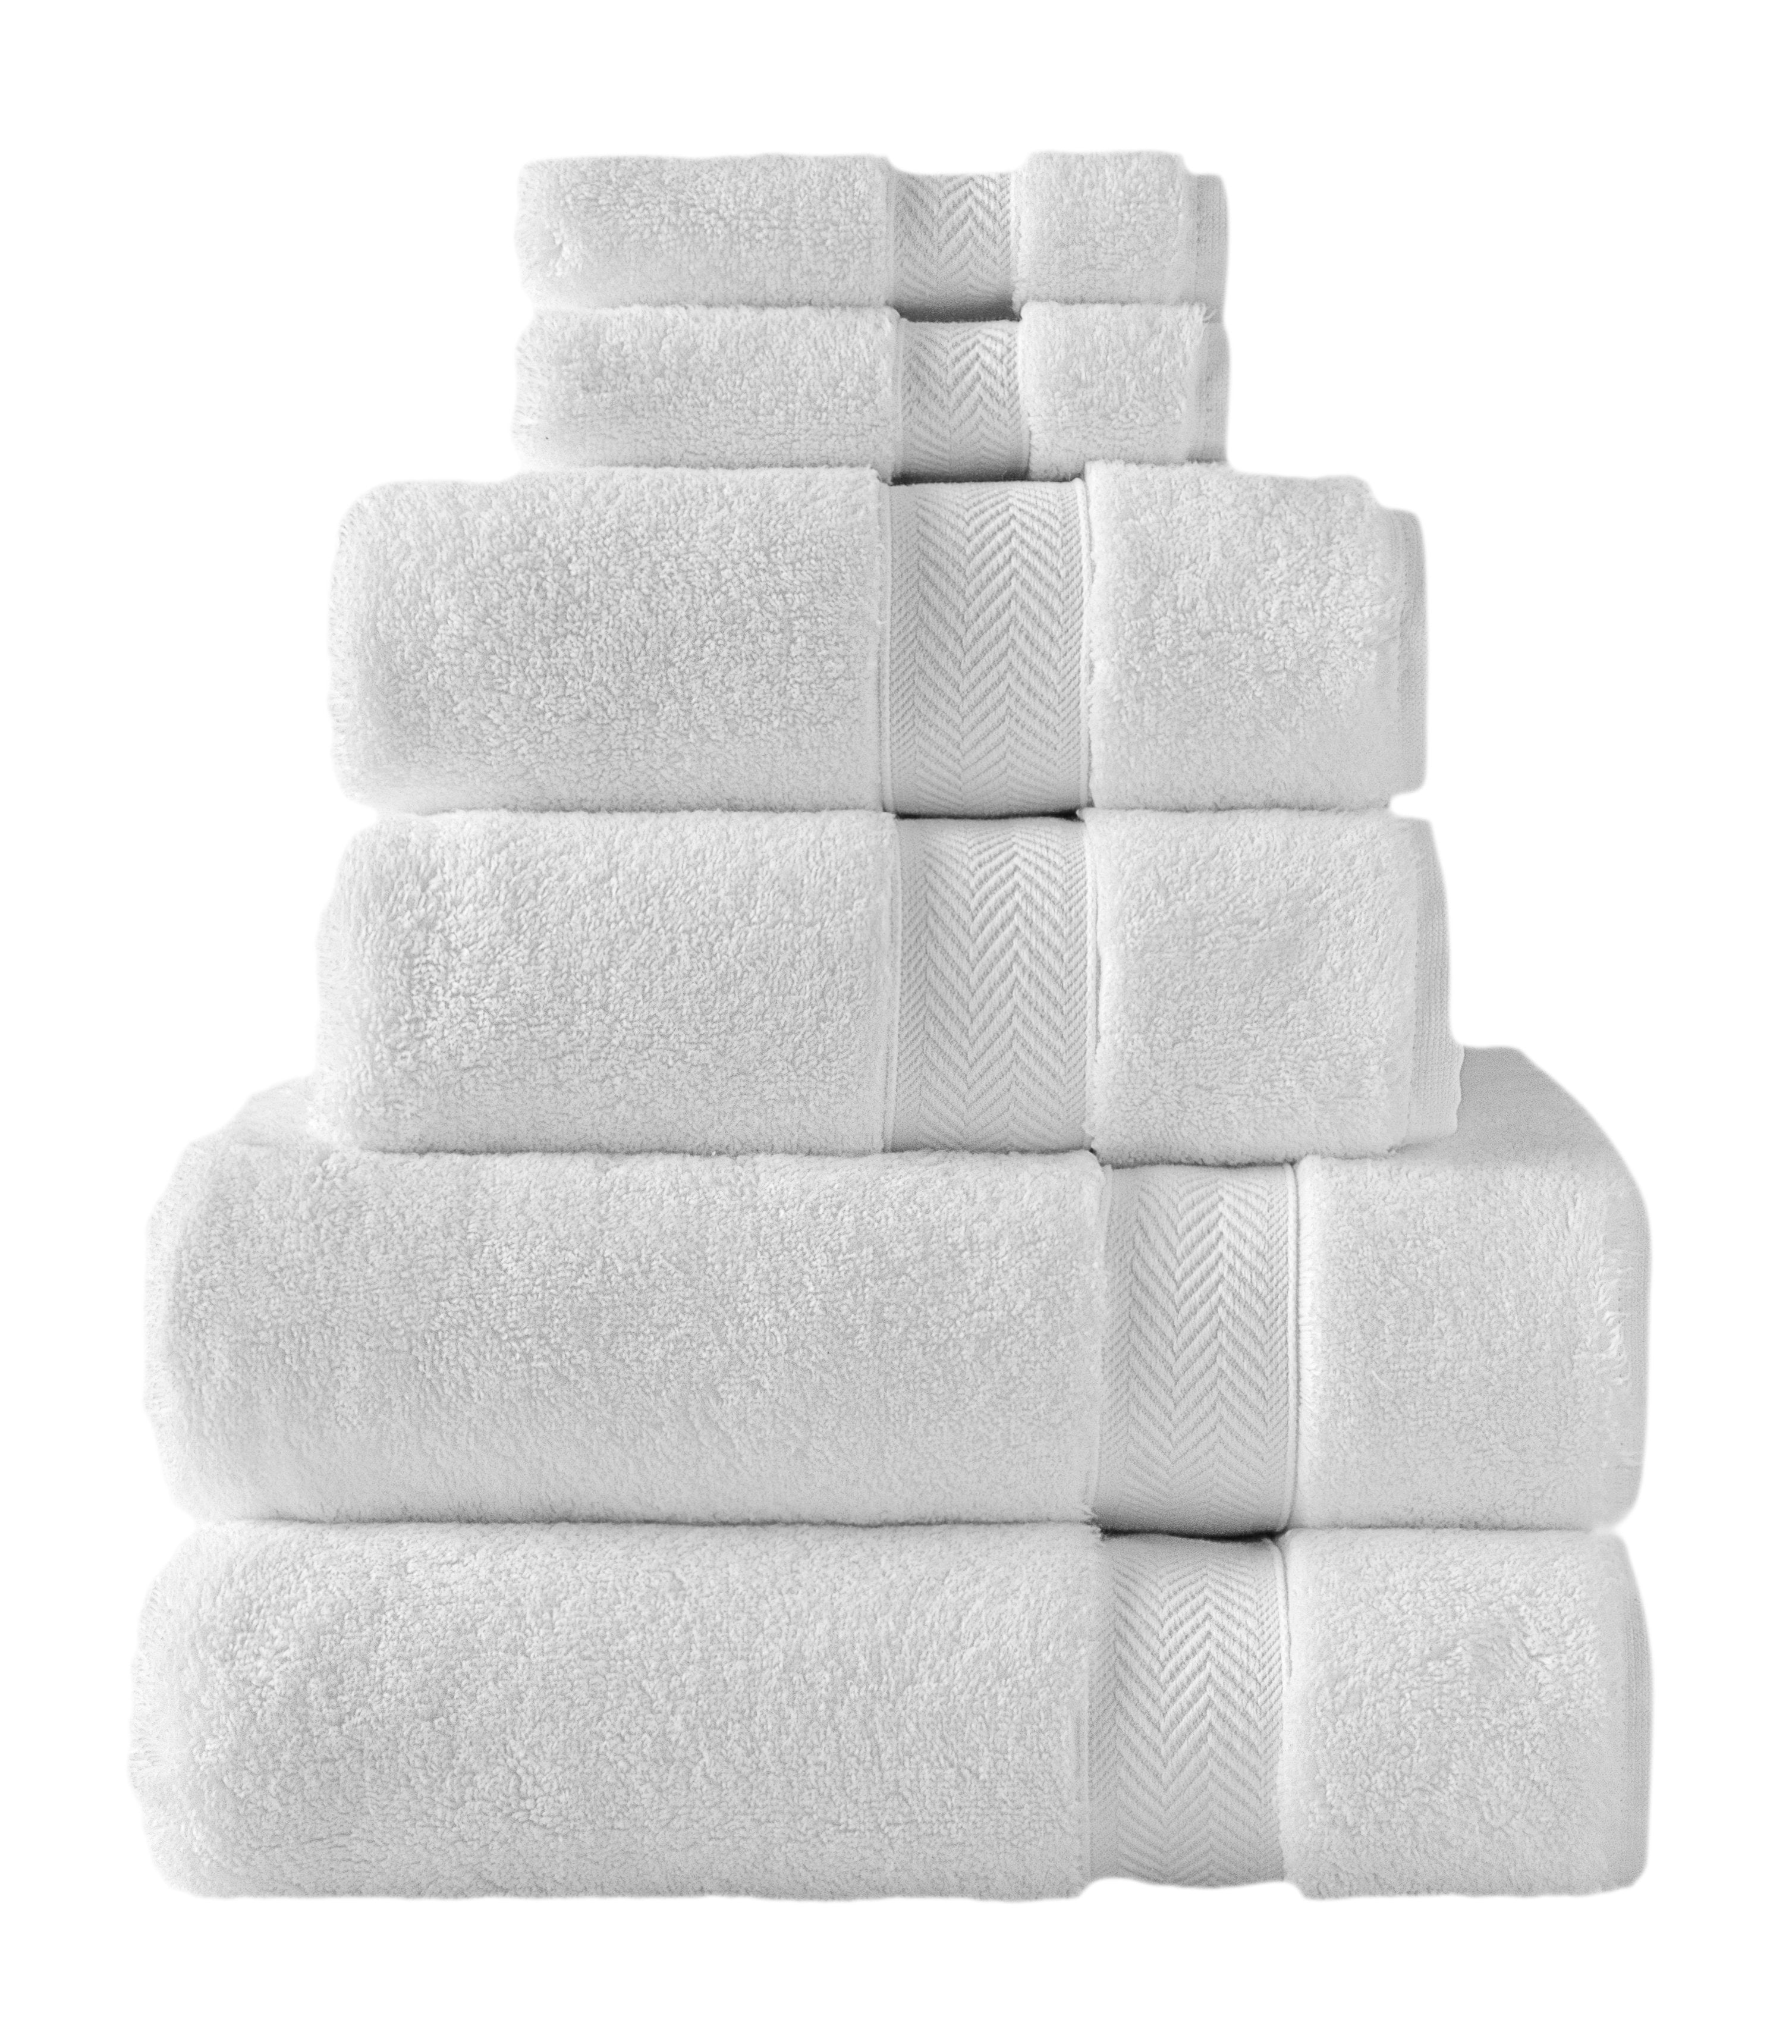 Klassic Collection 6 PK Towels Set - White